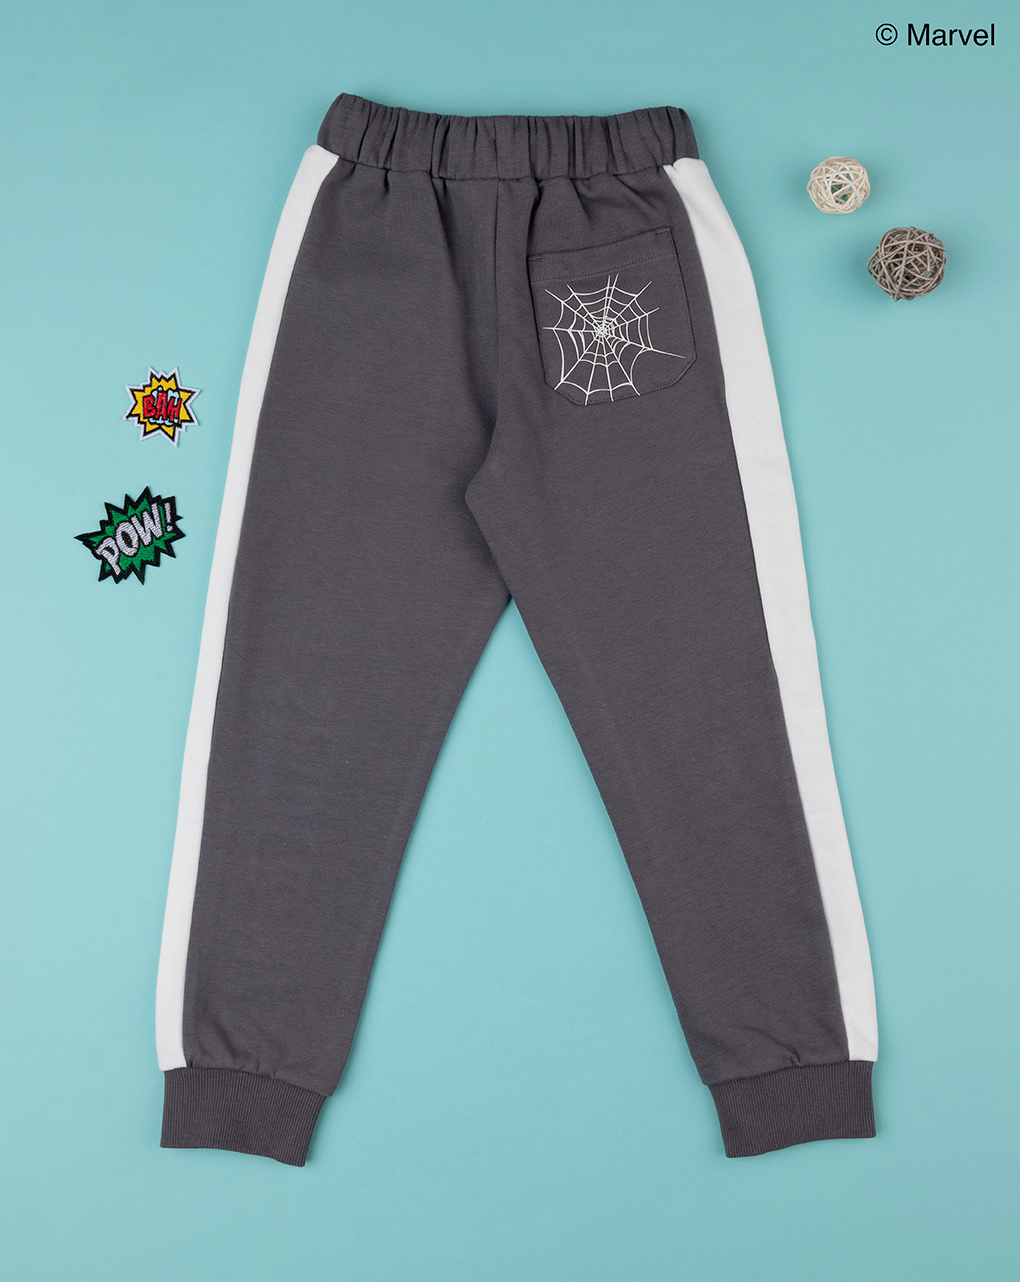 παιδικό παντελόνι φόρμας γκρι με τον spiderman για αγόρι - Prénatal